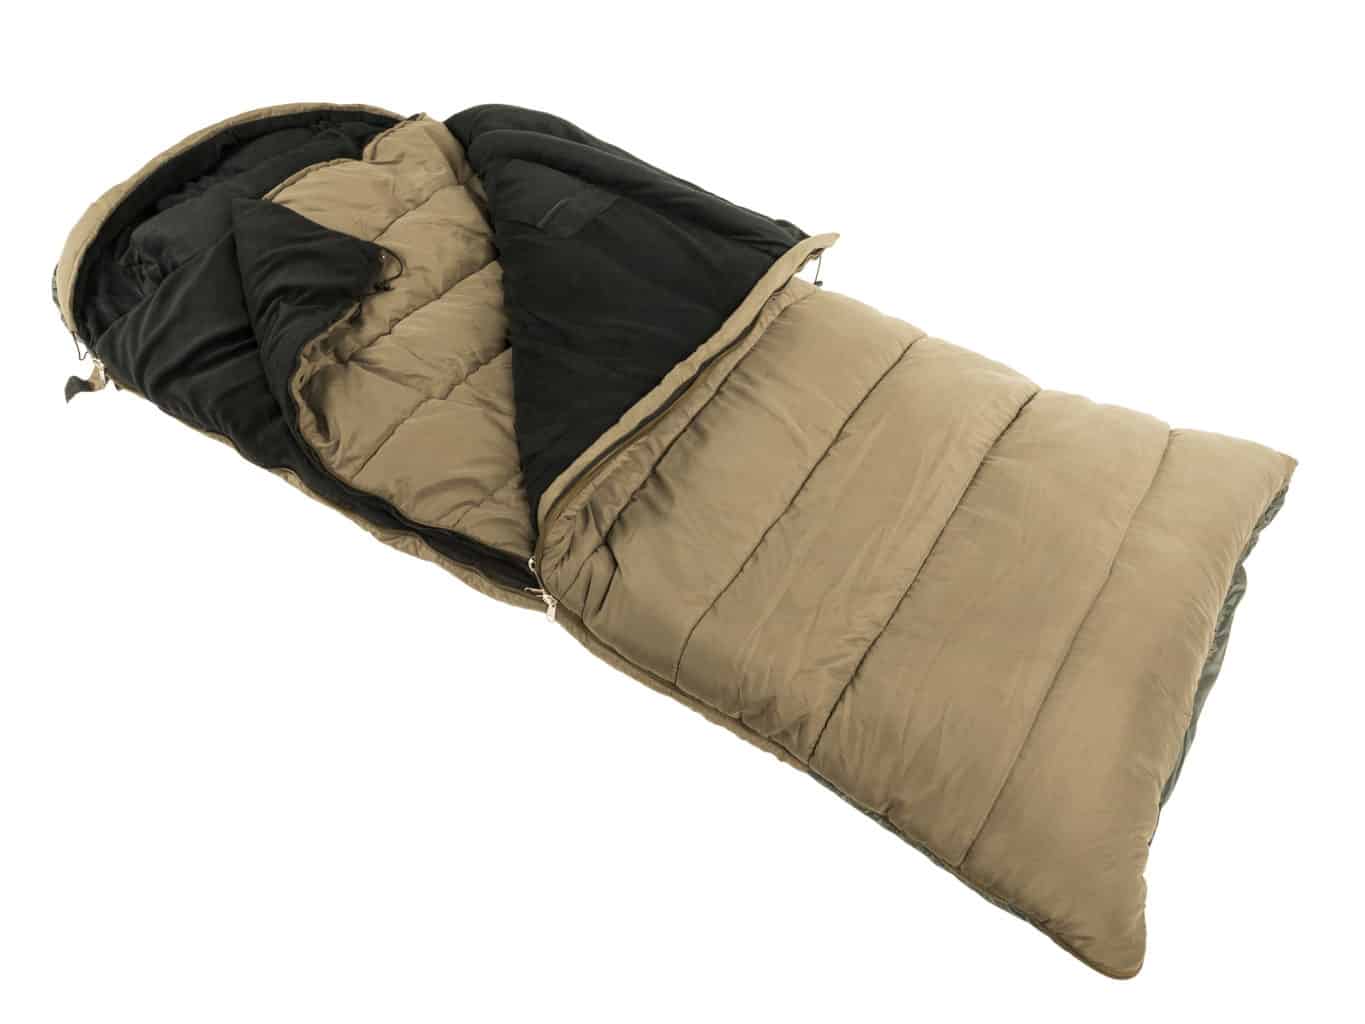 Warm sleeping bag